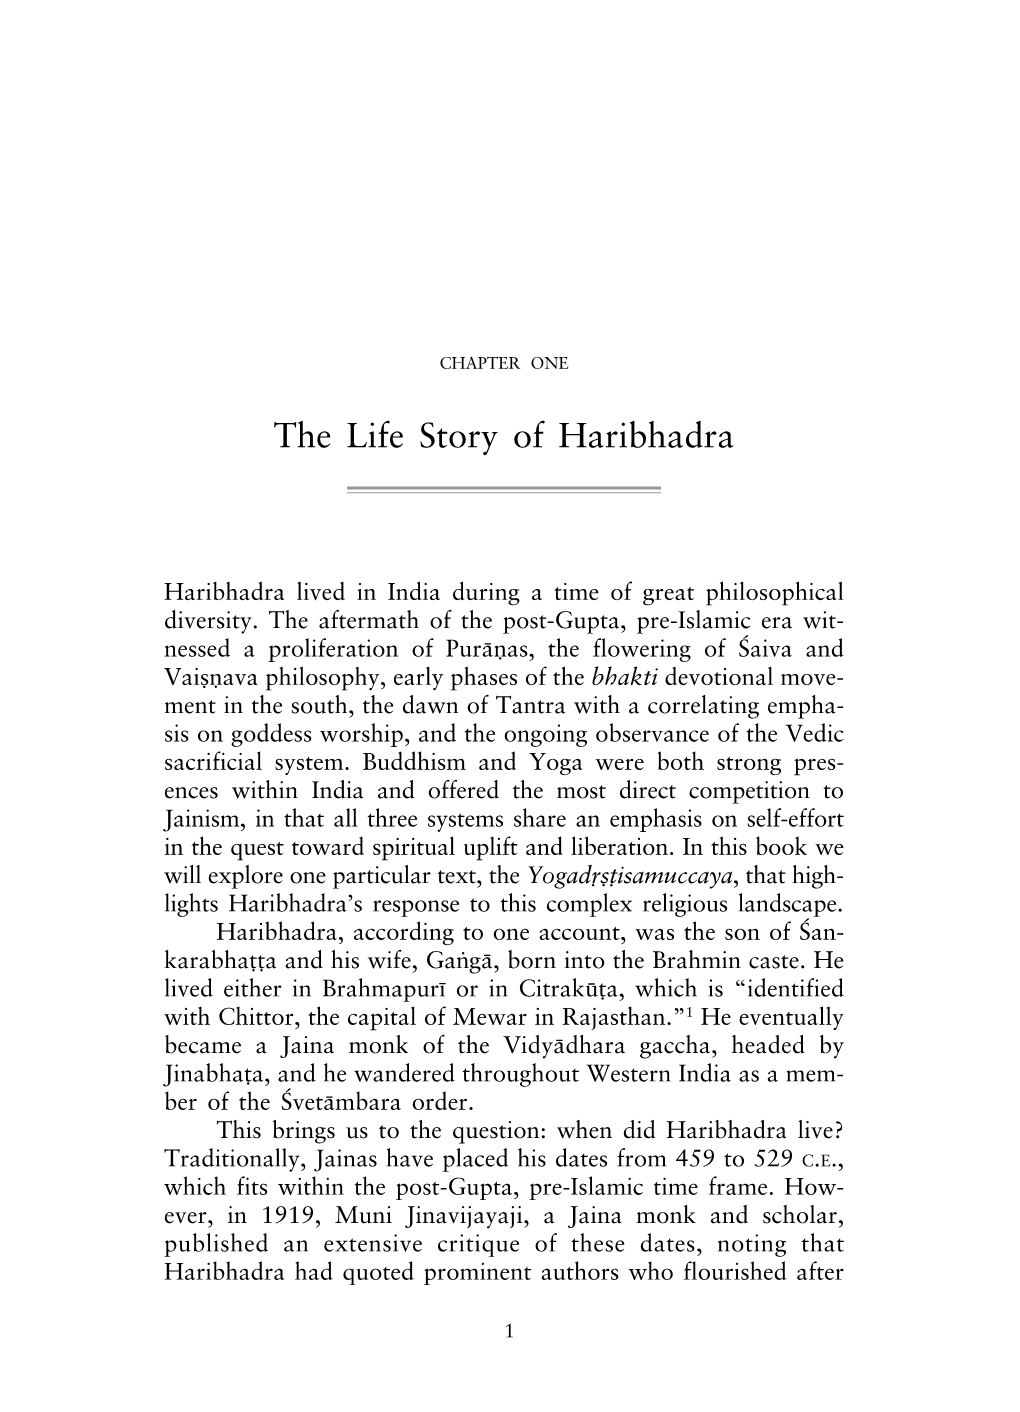 The Life Story of Haribhadra